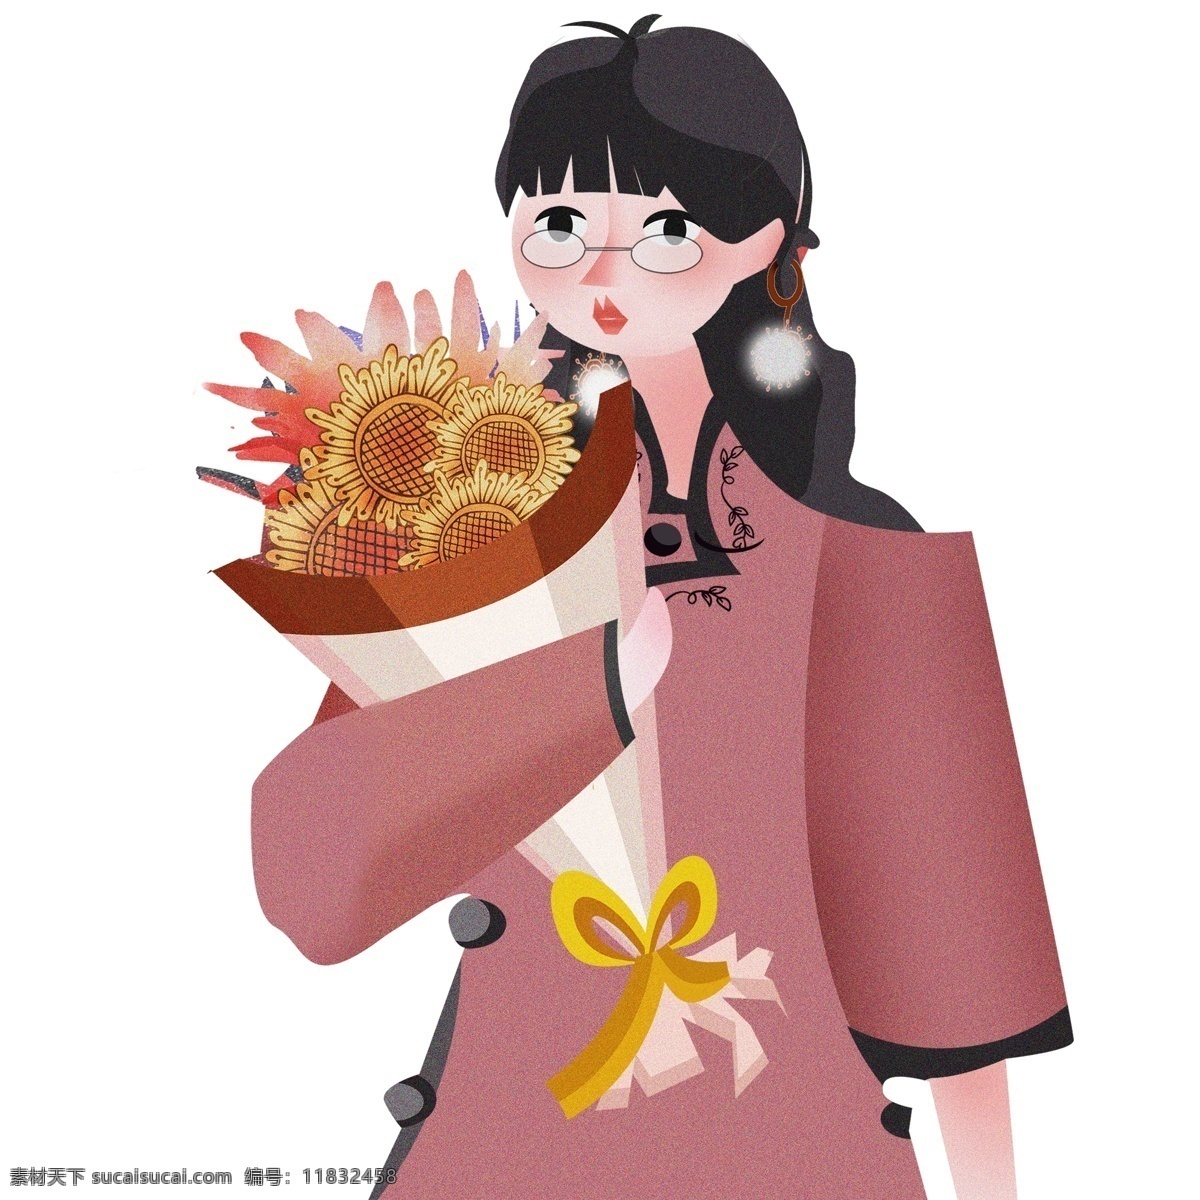 中国 风 捧 束 雏 菊 少女 卡通 中国风 女性 植物 插画 复古 雏菊